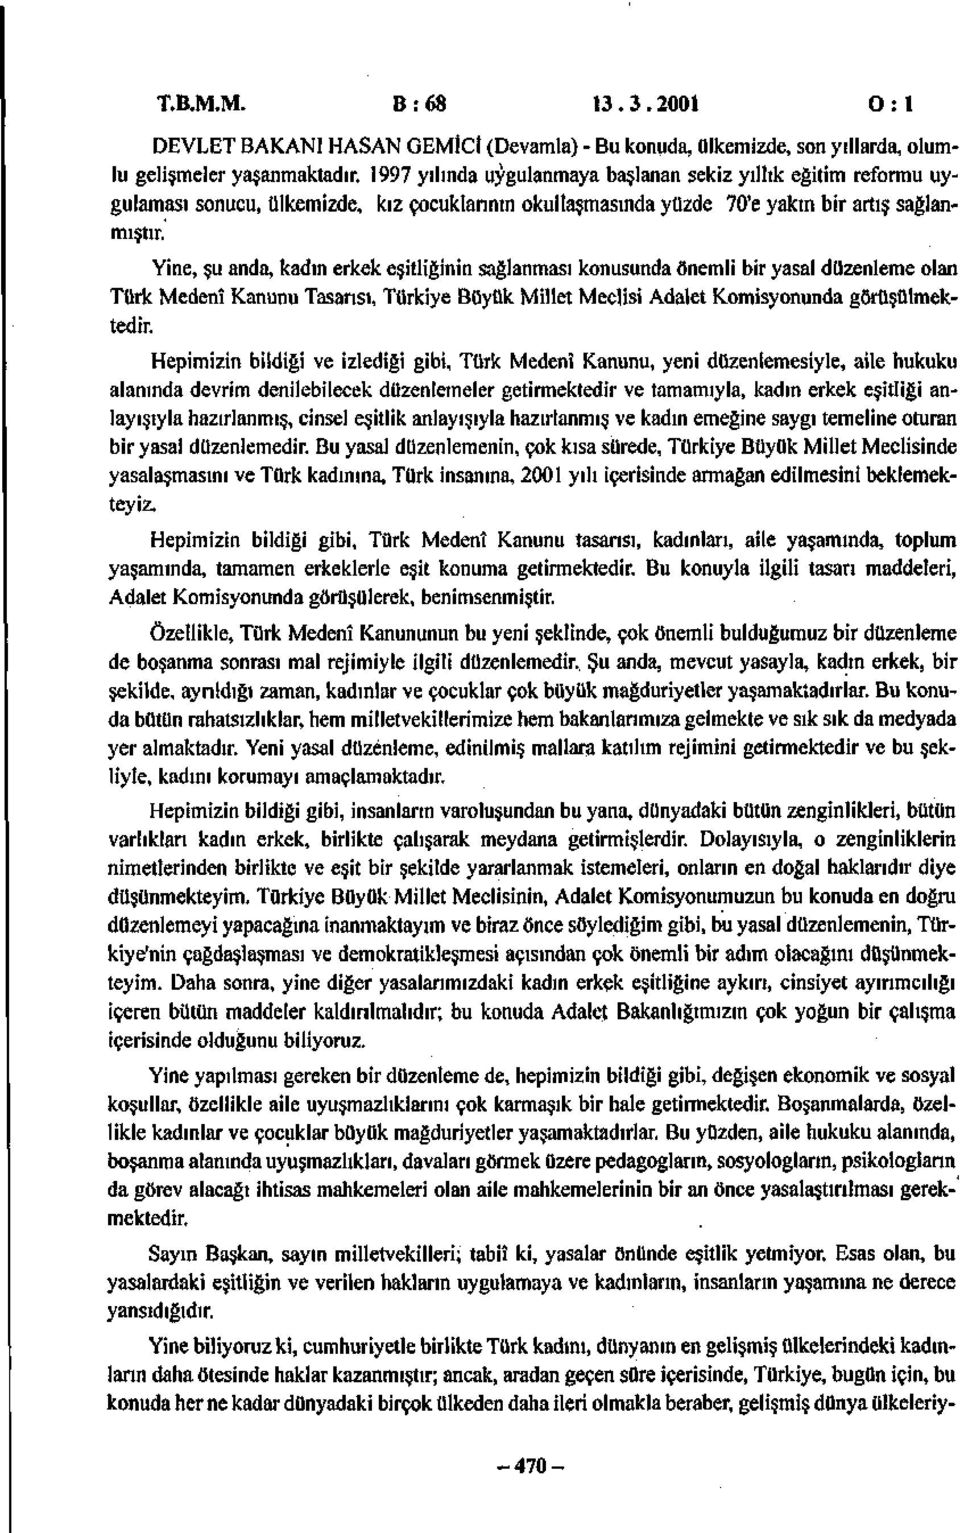 Yine, şu anda, kadın erkek eşitliğinin sağlanması konusunda önemli bir yasal düzenleme olan Türk Medenî Kanunu Tasarısı, Türkiye Büyük Millet Meclisi Adalet Komisyonunda görüşülmektedir.